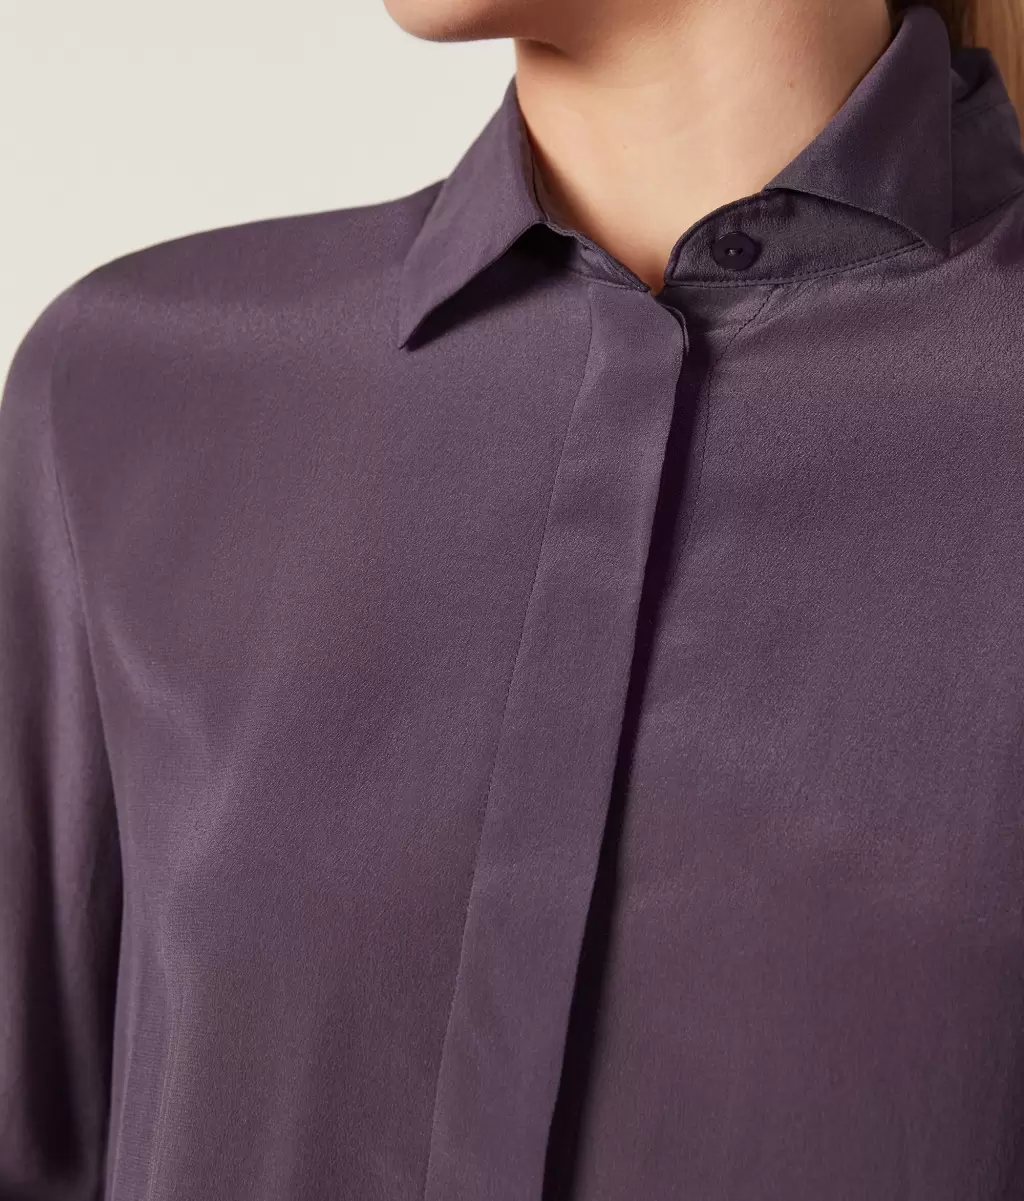 Falconeri Koszule I Bluzki Jedwabna Koszula Z Kołnierzykiem Kobieta Violet - 3